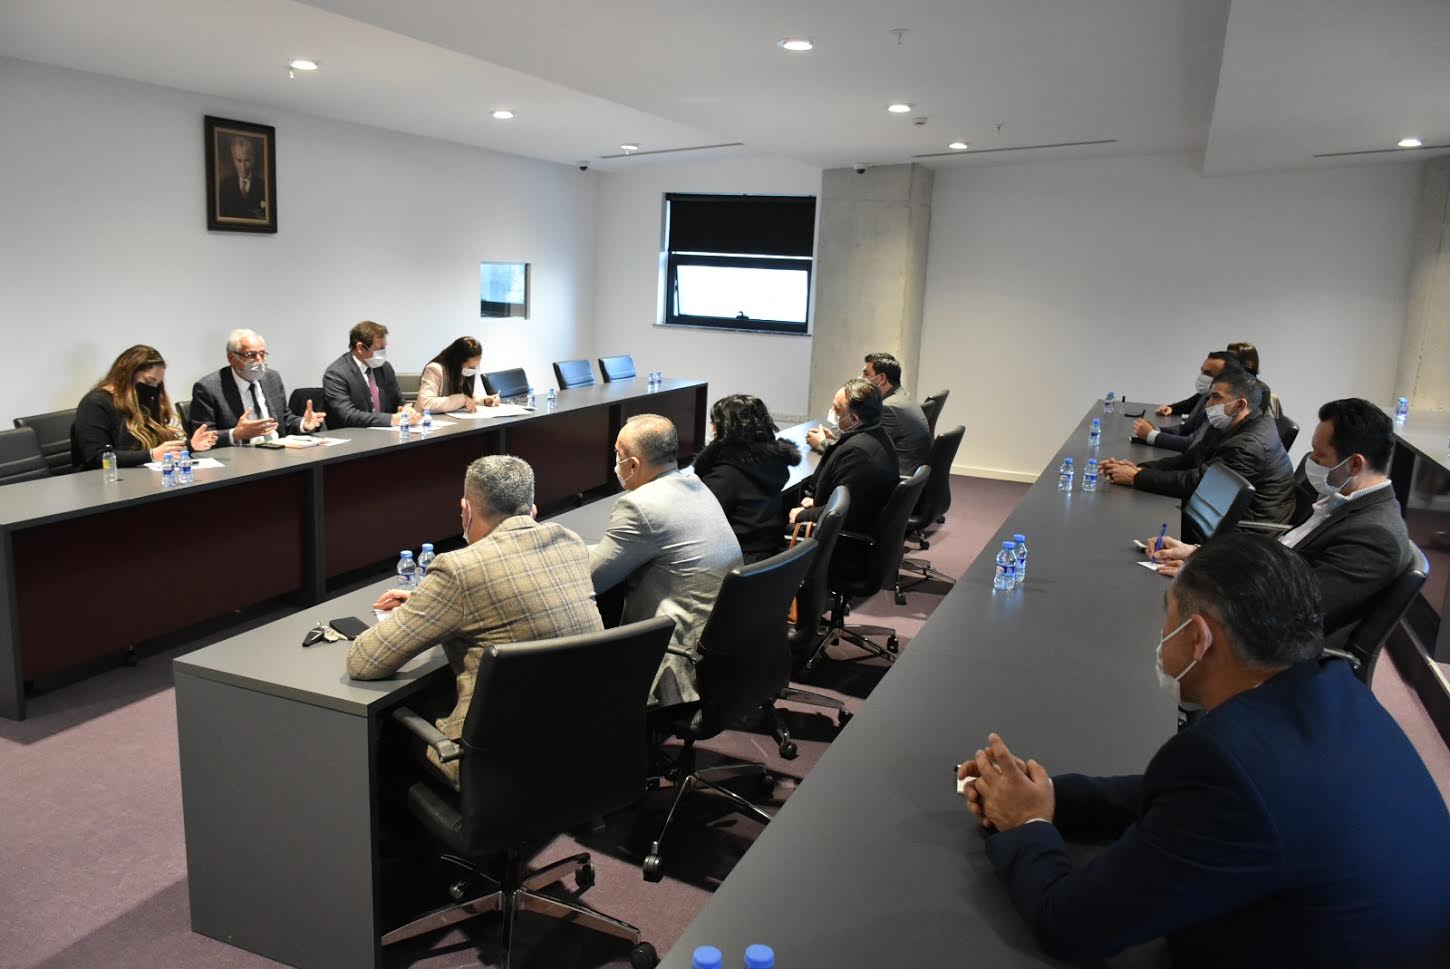 Ο Δήμος Girne και η Διοικητική Περιφέρεια Girne συζήτησαν τα μέτρα που πρέπει να ληφθούν από τους διαχειριστές του καζίνο λόγω της αύξησης των υποθέσεων